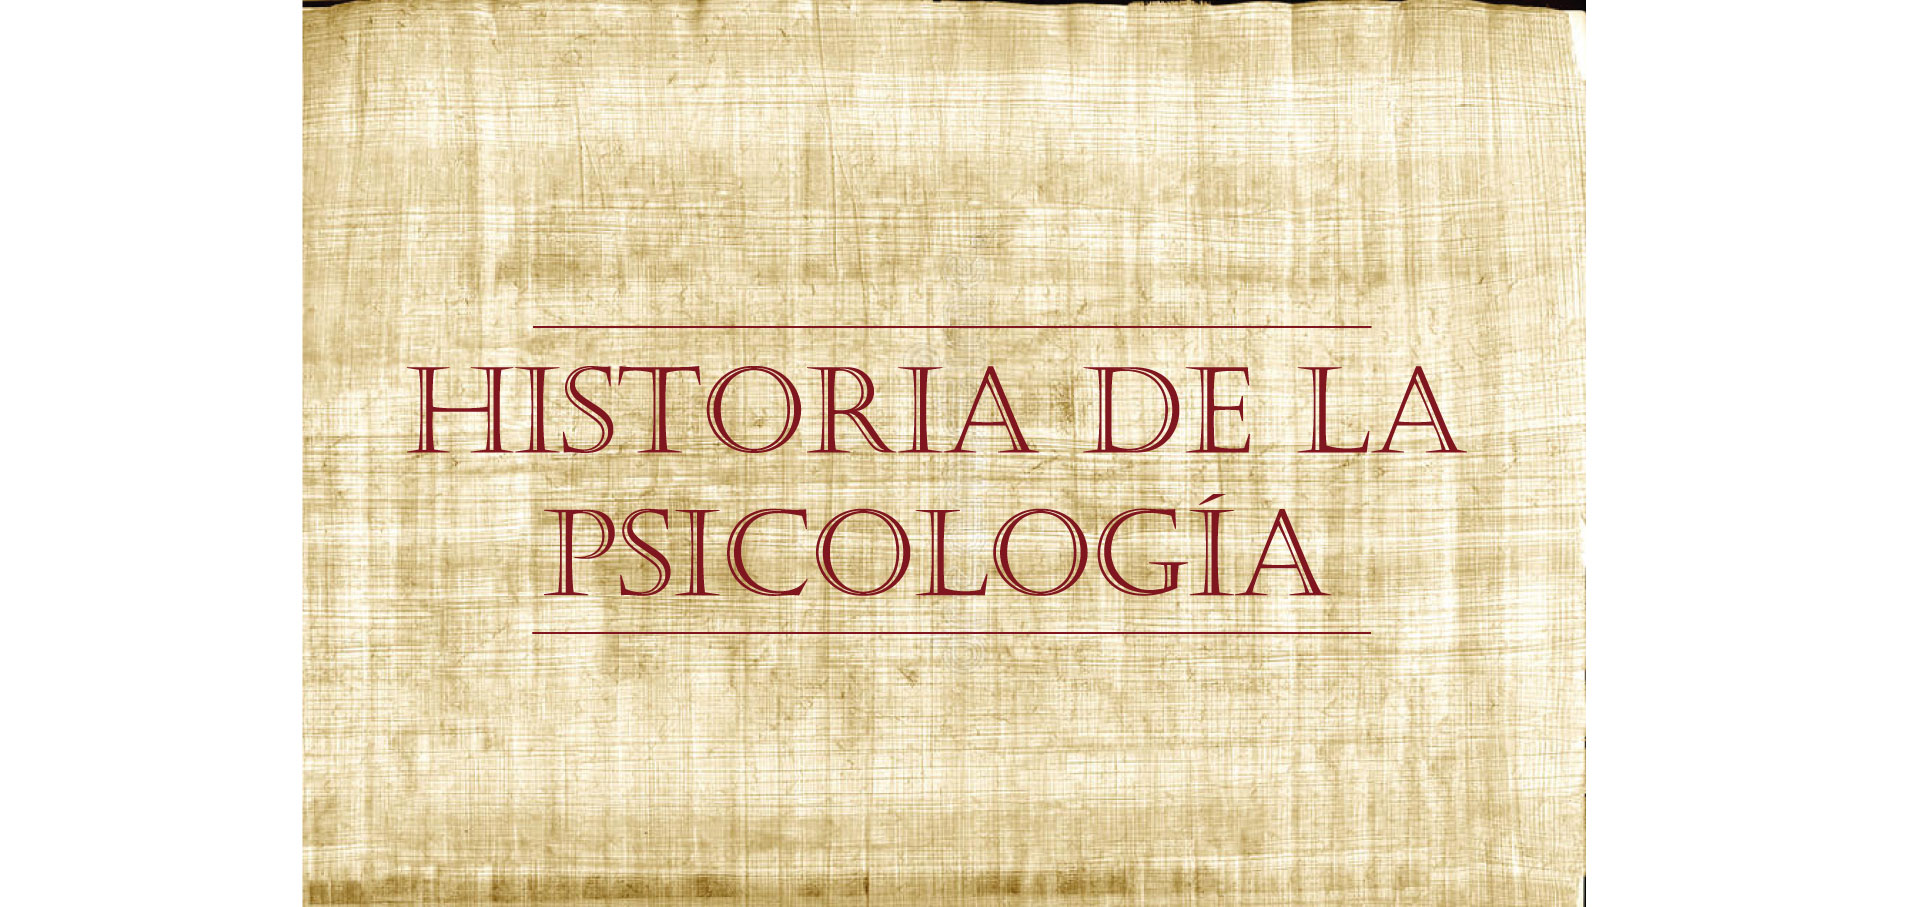 HISTORIA-DE-PSICOLOGiA_2